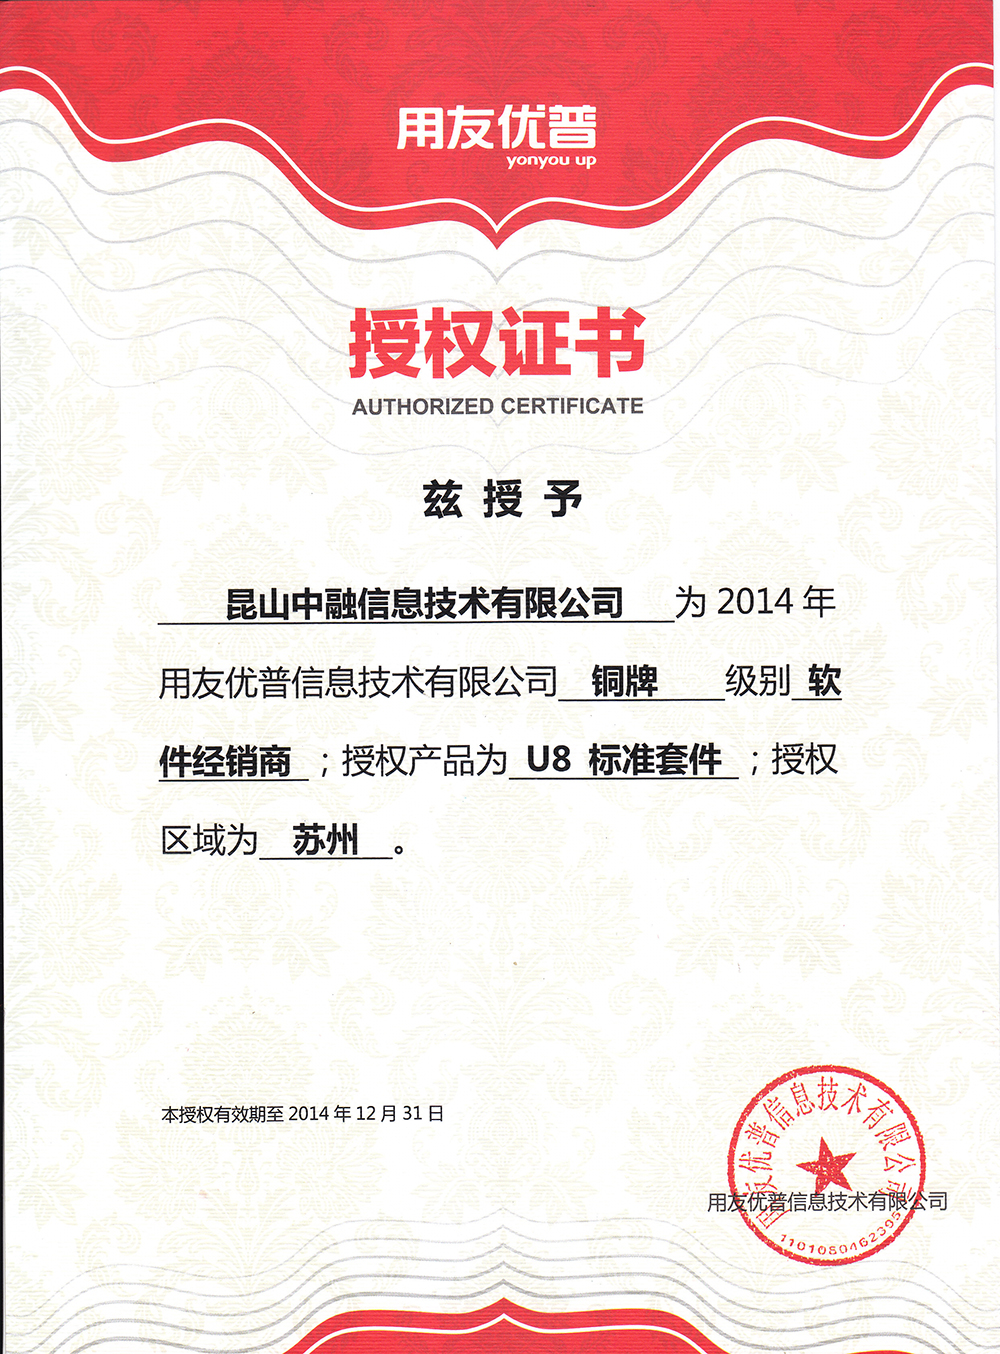 2014年授权证书